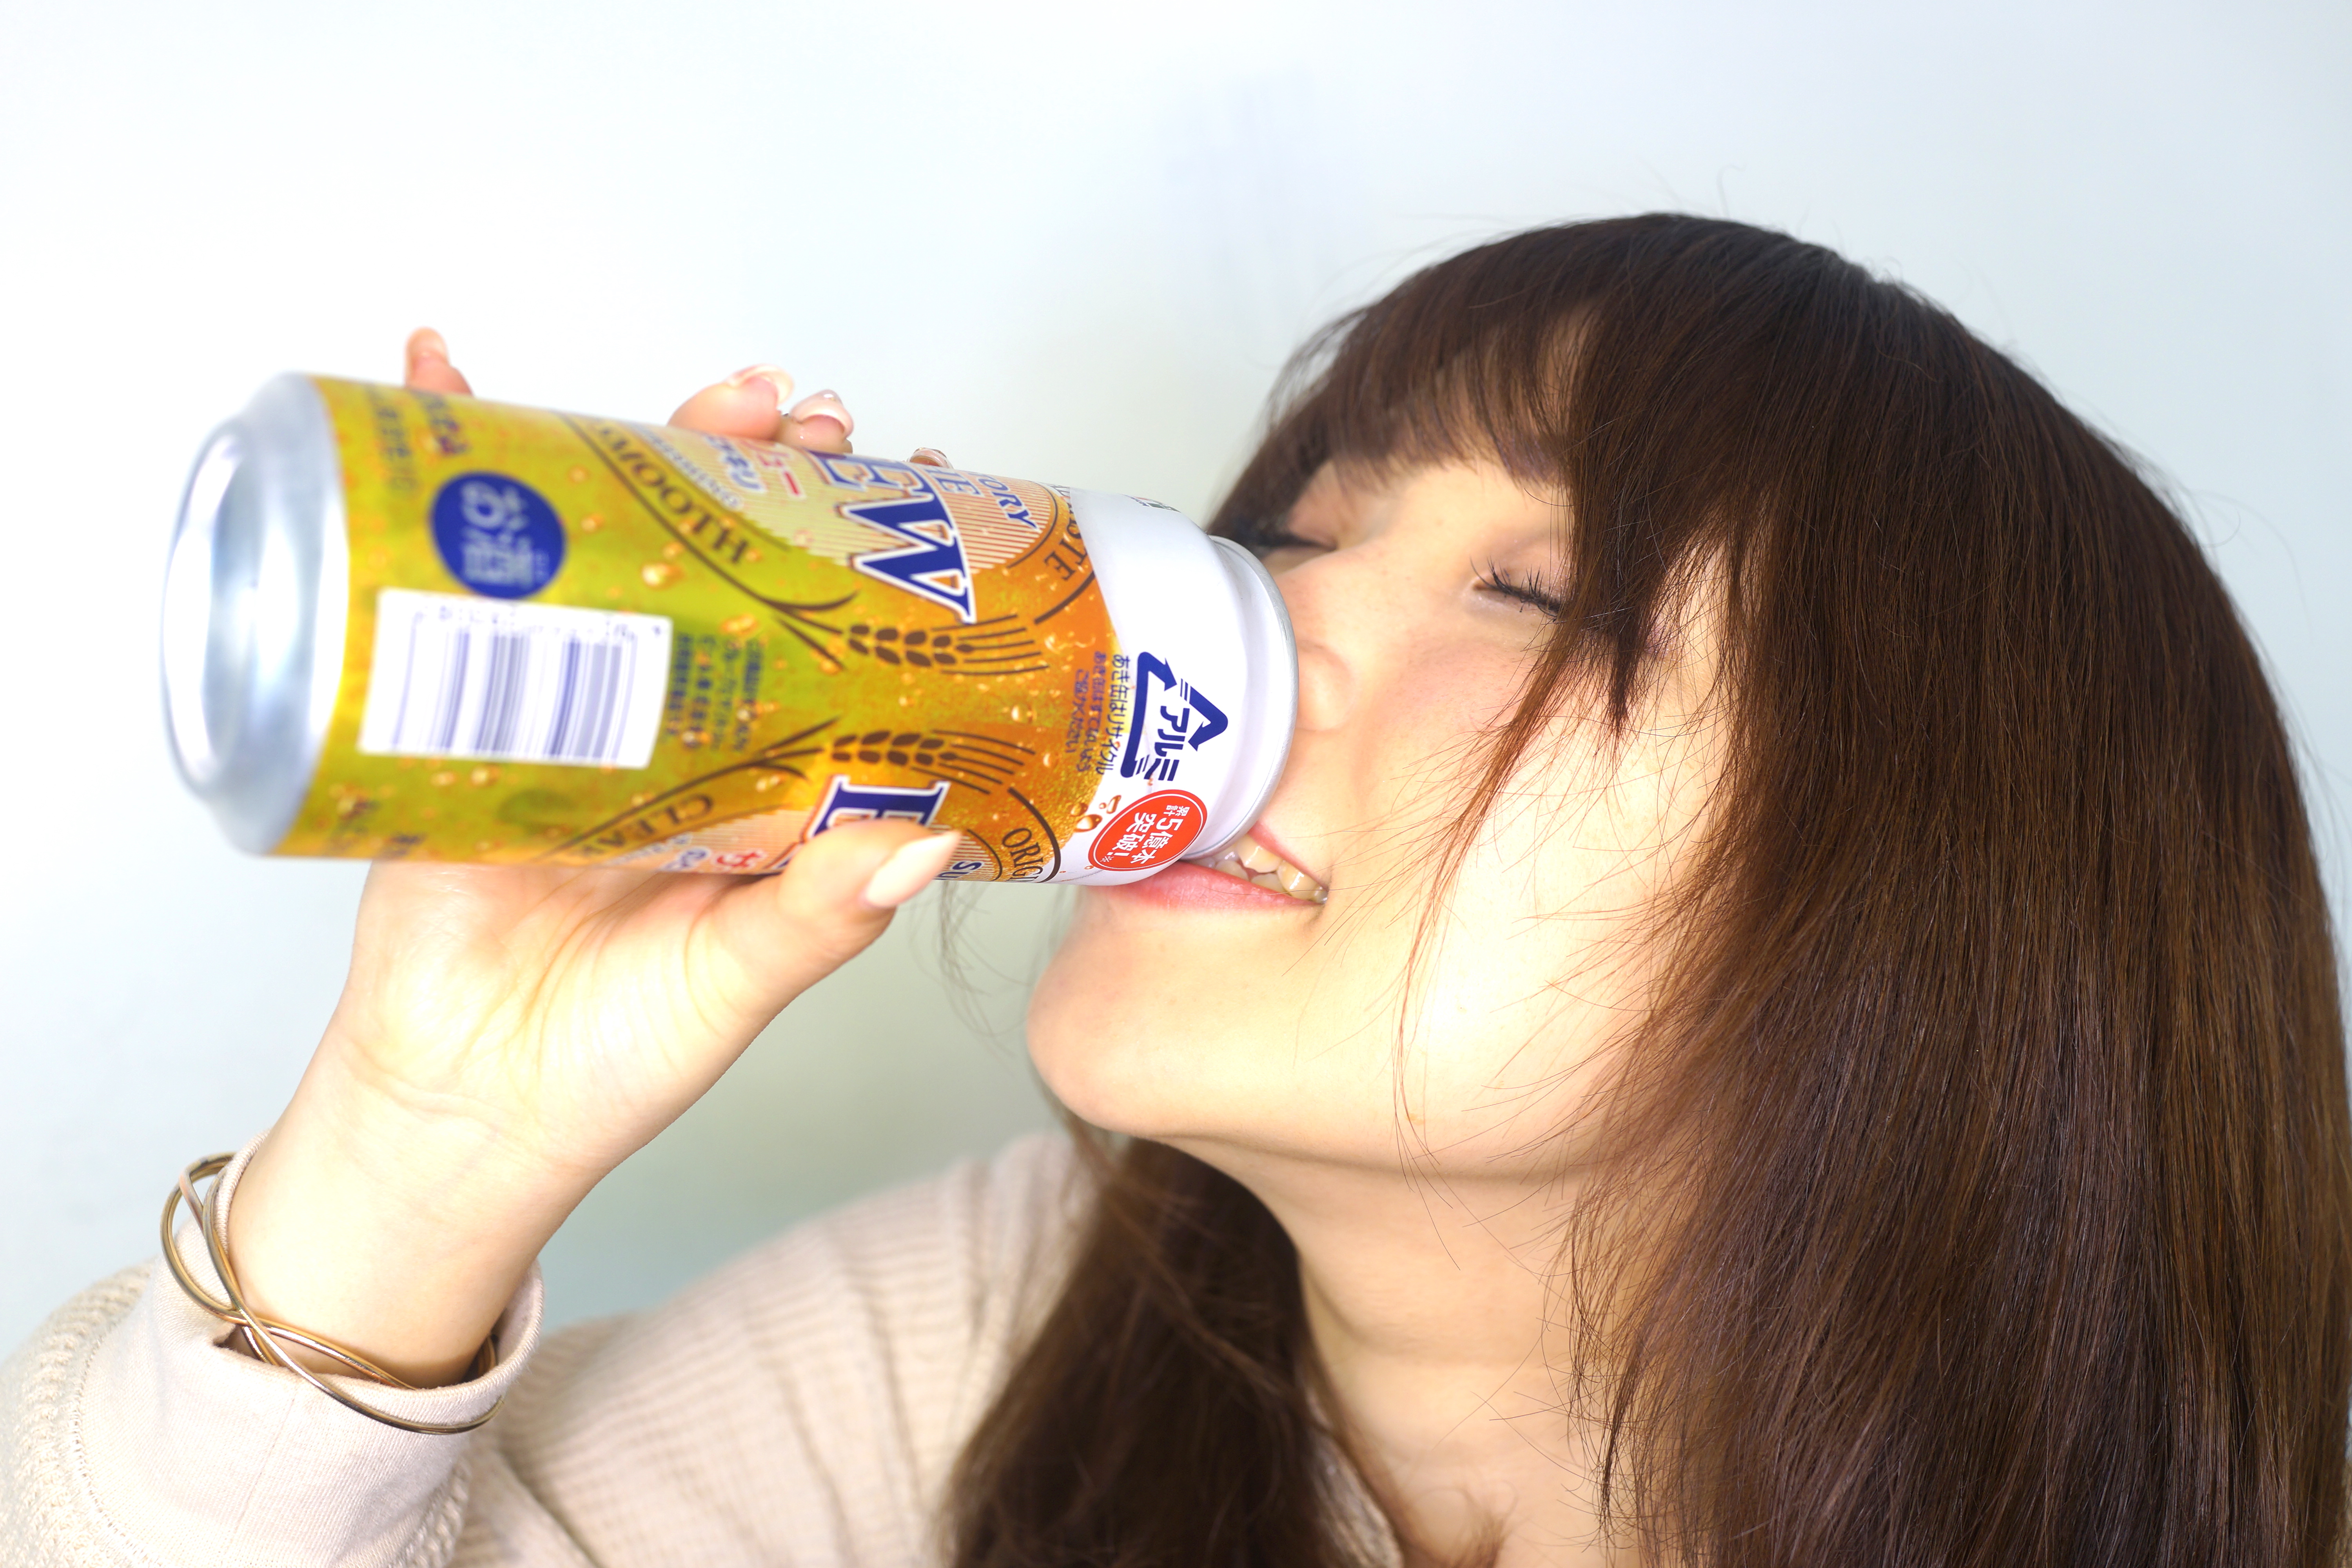 フリー画像素材 幸せな顔で缶ビールを飲む女性 フリー素材のaphoto アフォト